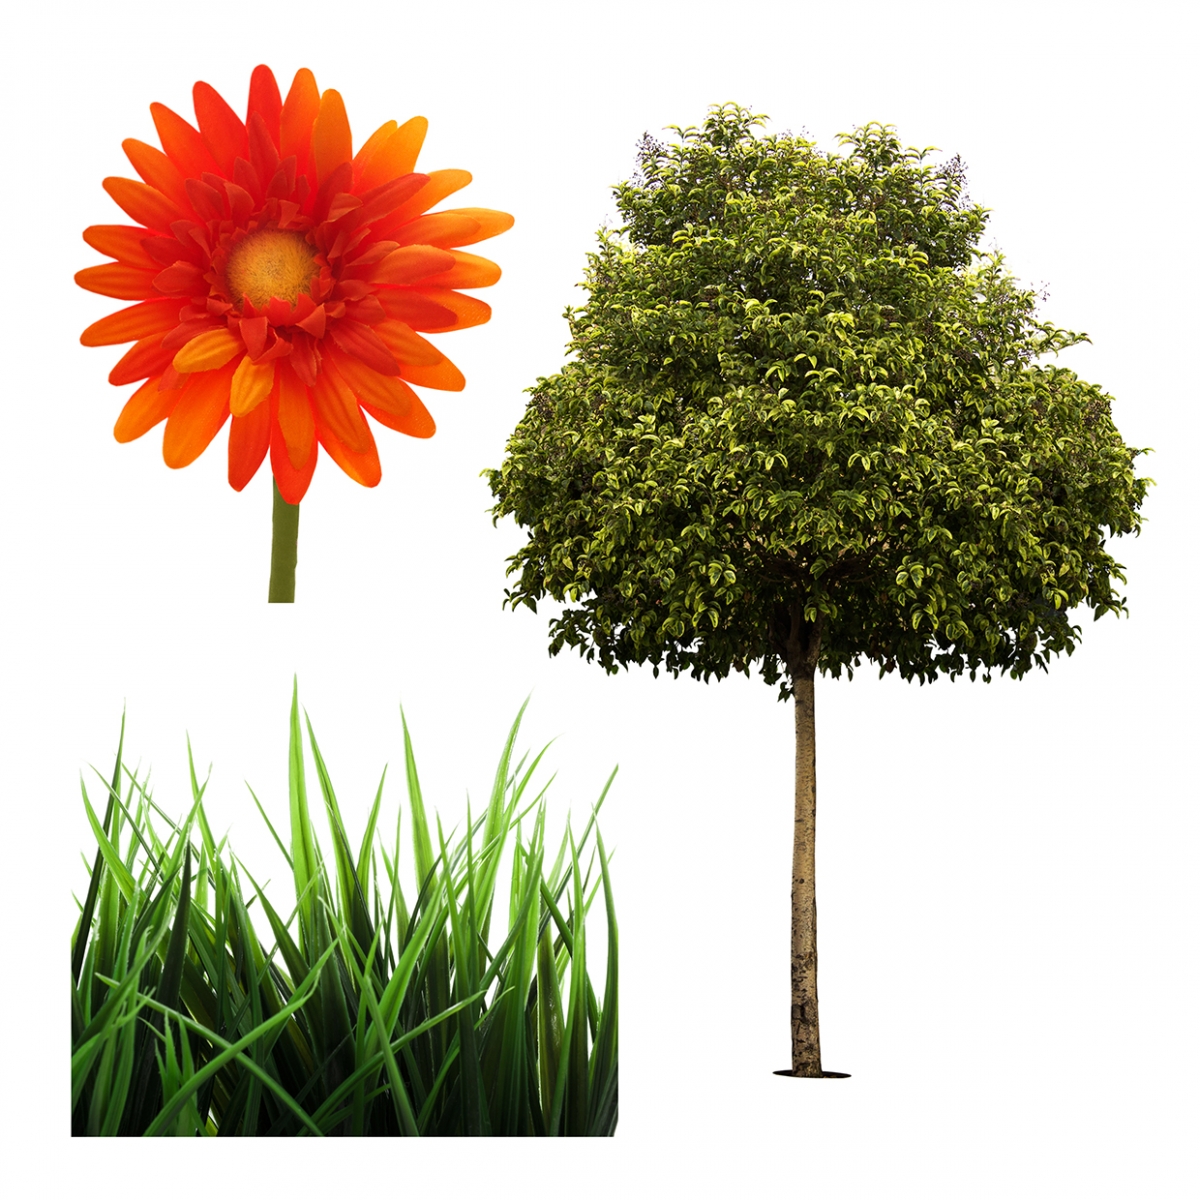 Imagen en la que se ven tres plantas: una flor, cesped y un árbol